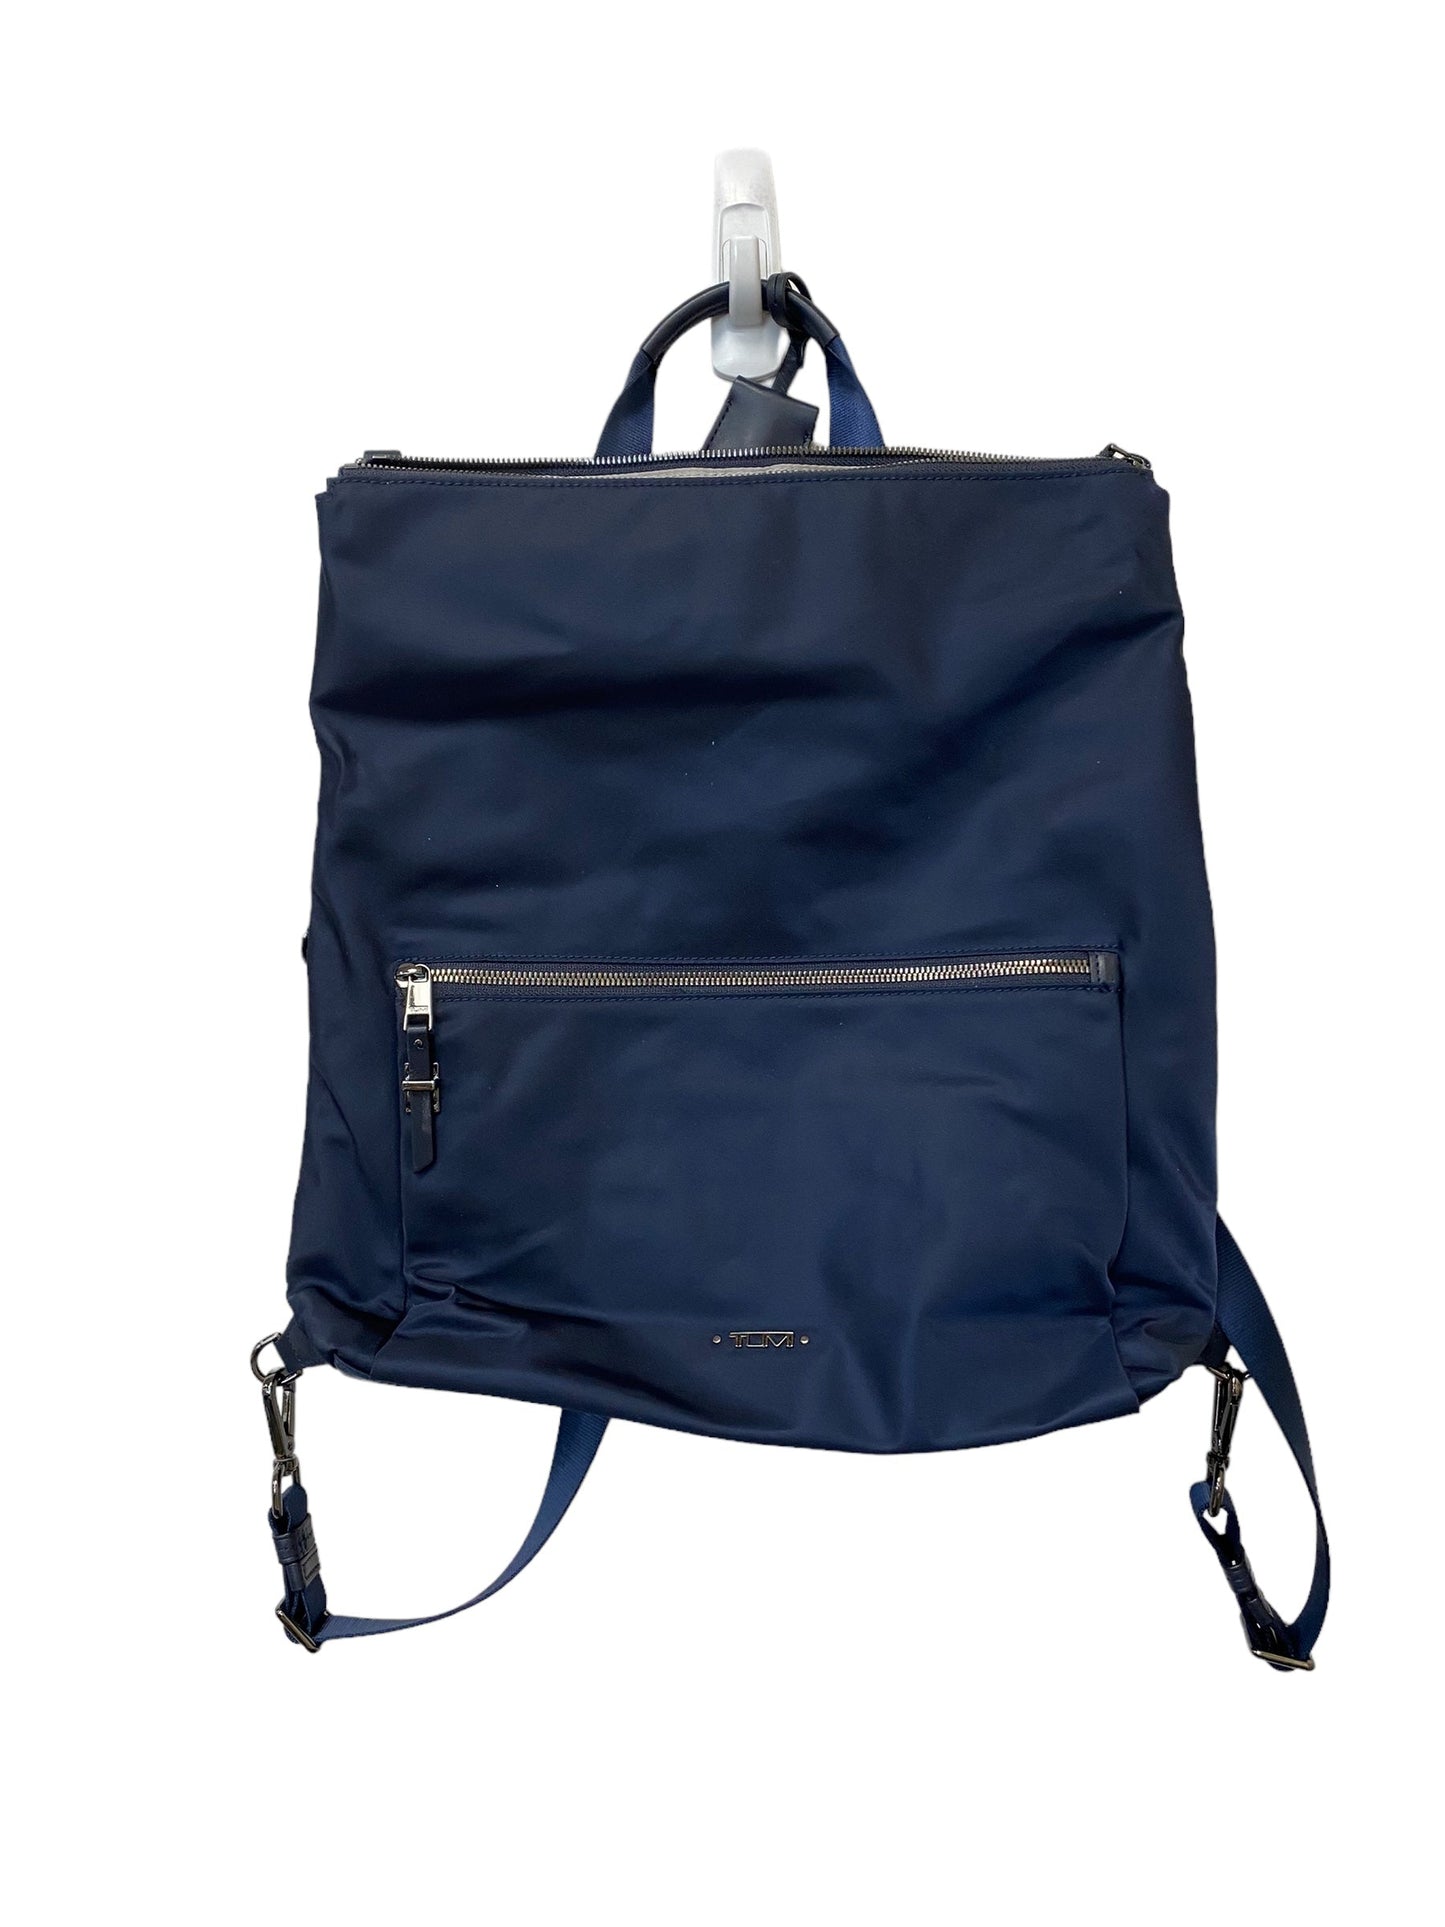 Backpack Tumi, Size Medium